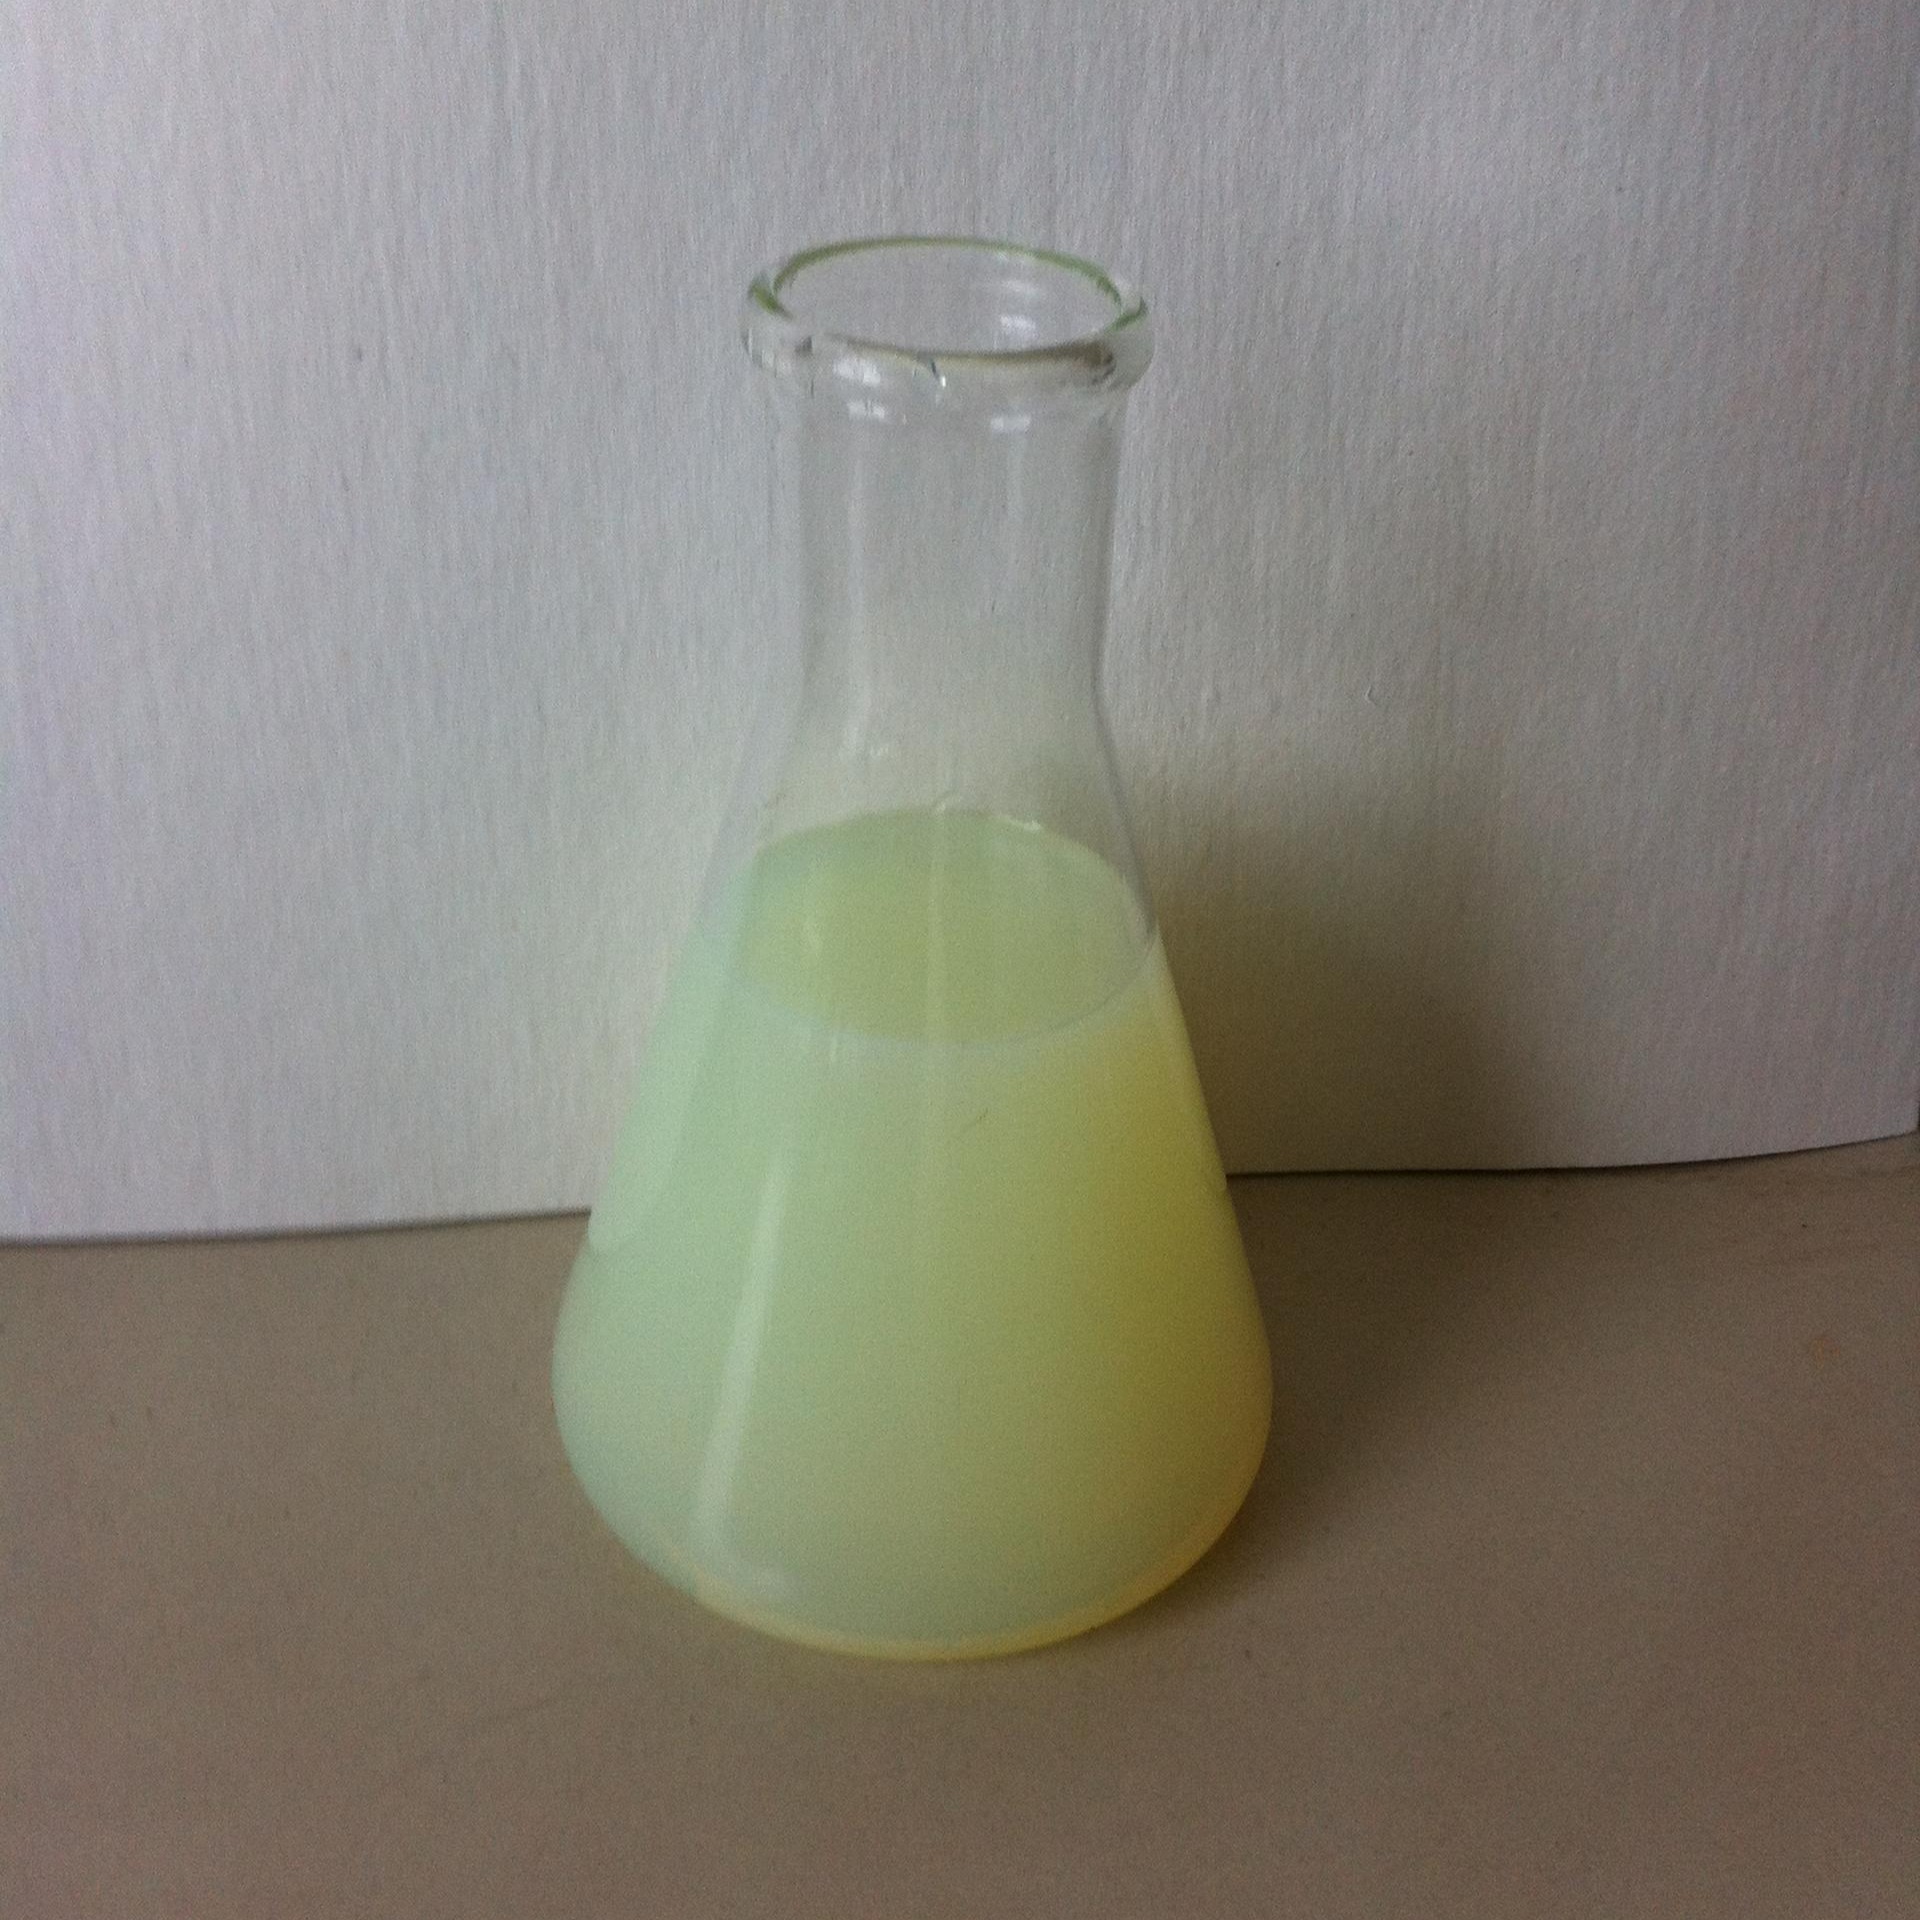 机油乳化剂 复配型机油乳化剂 乳化机油具有良好的乳化 润滑 分散性能 阿切斯化工